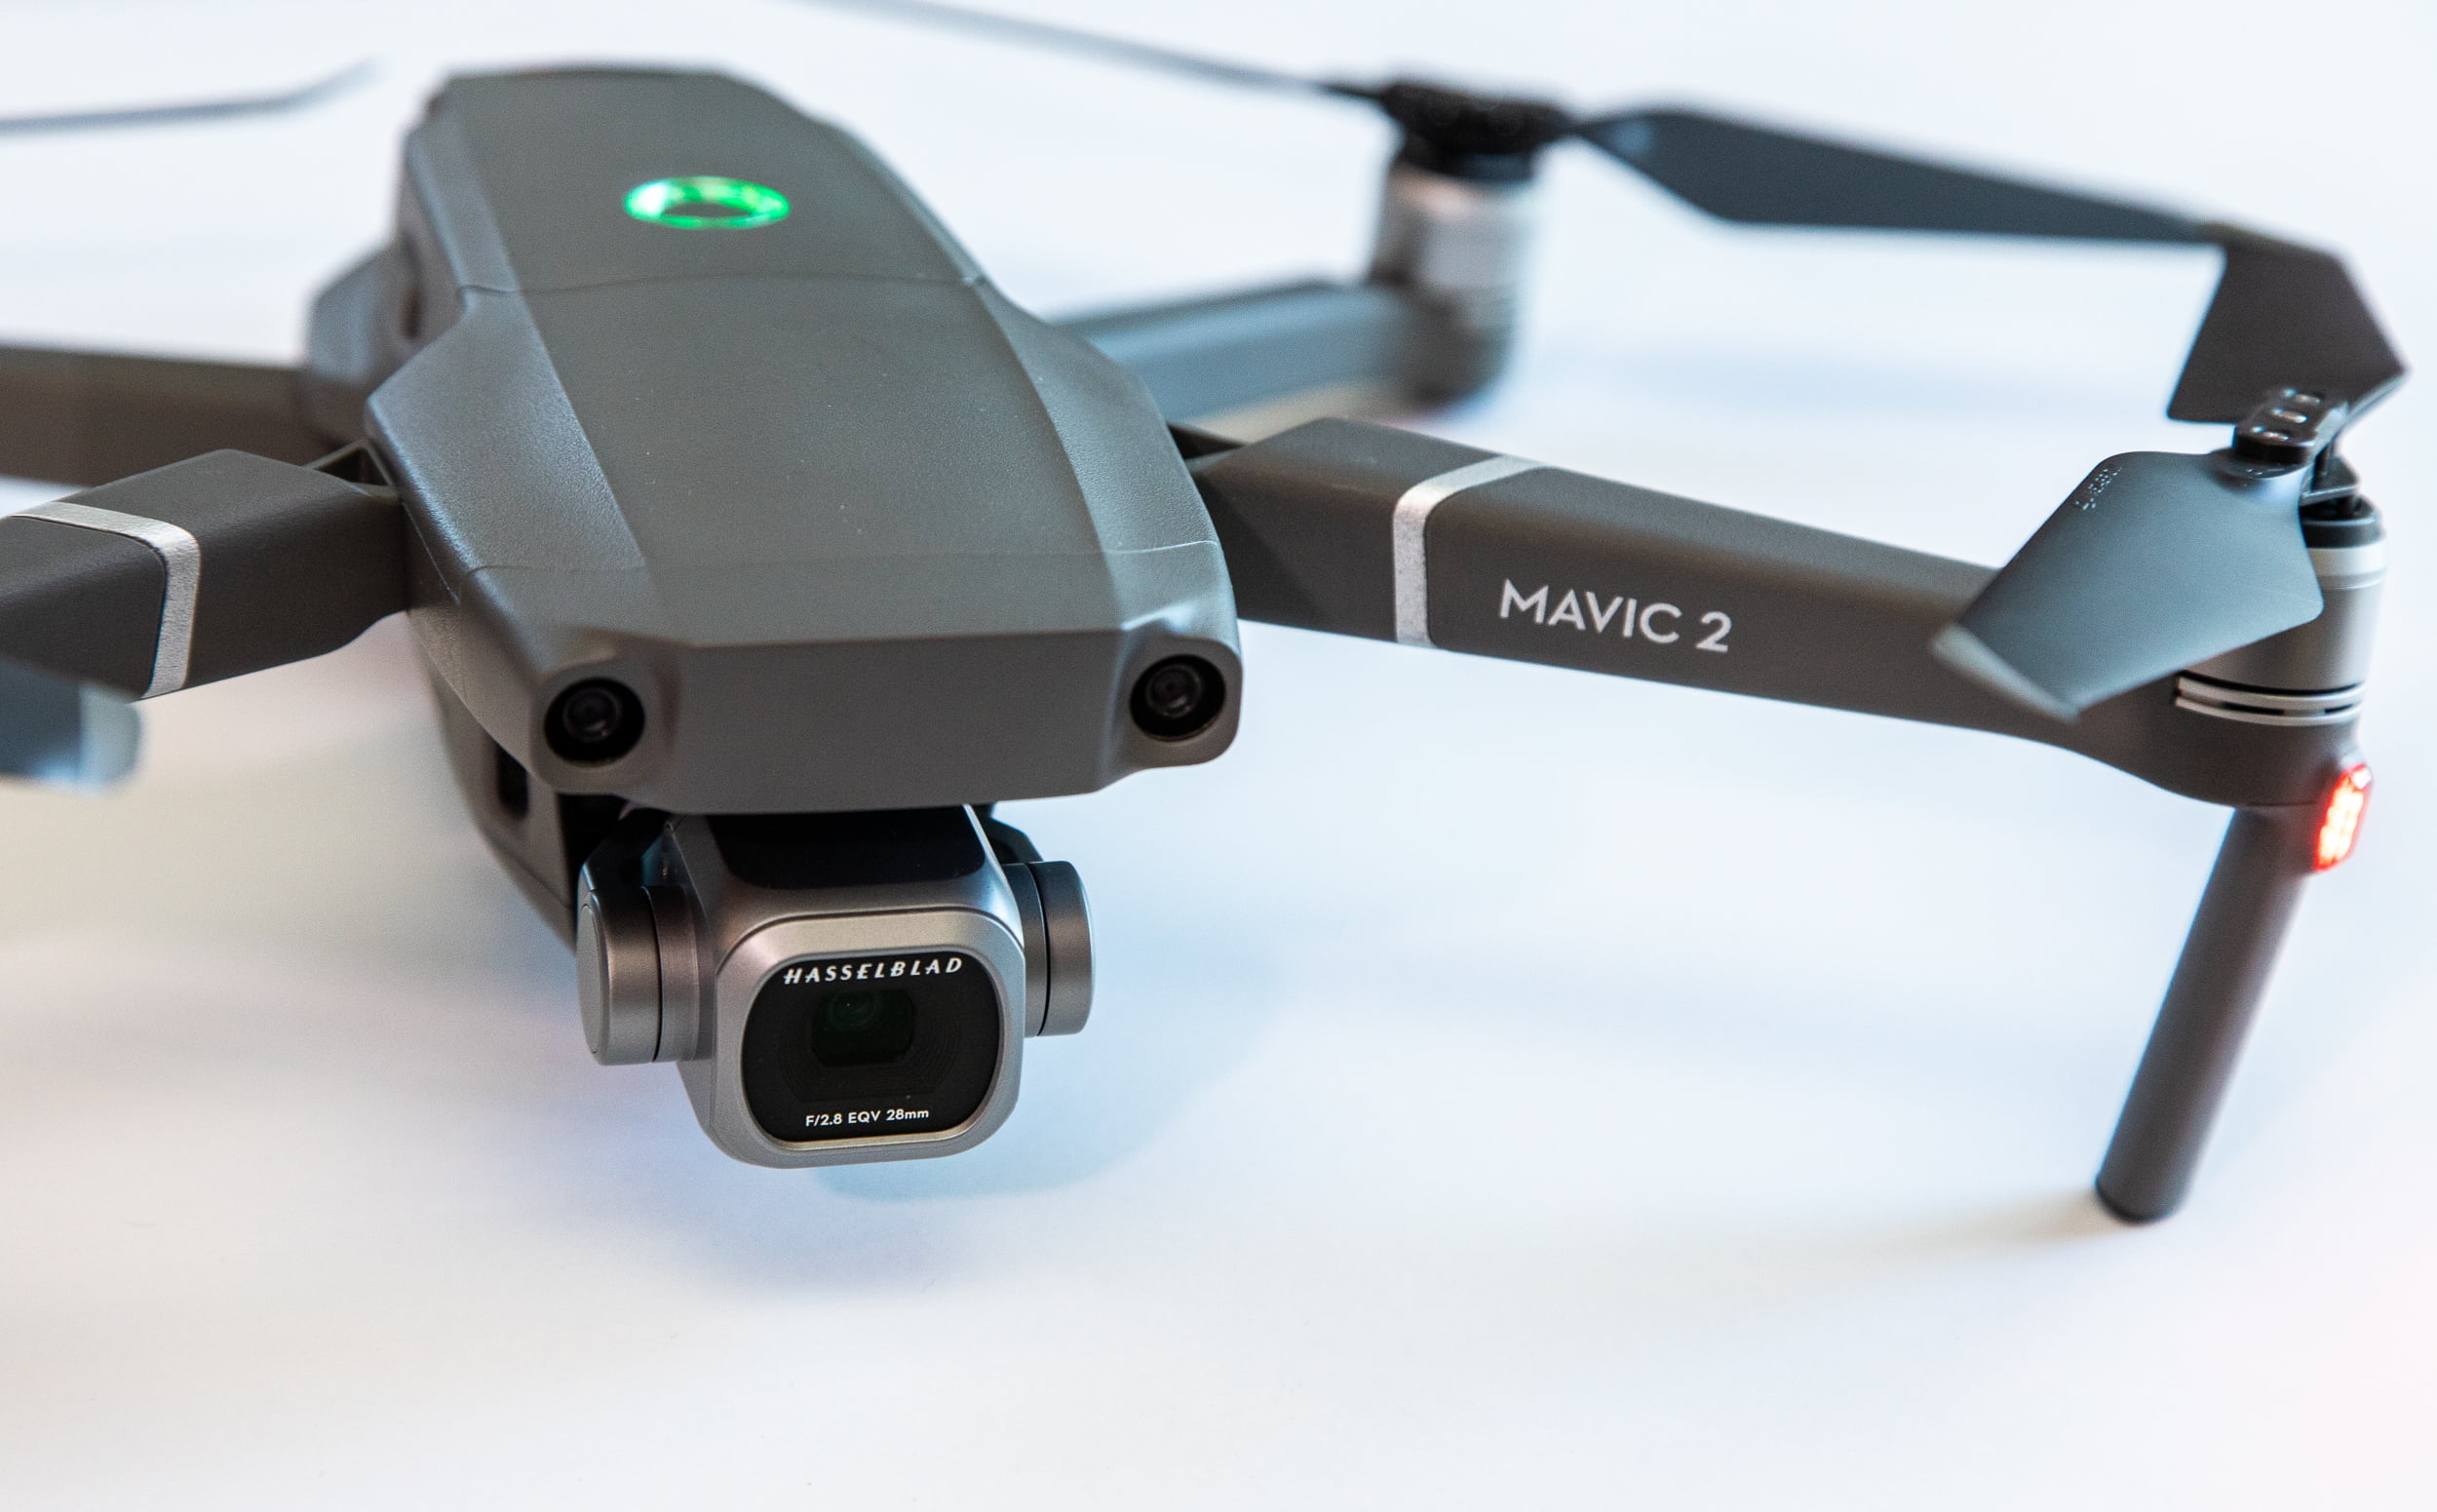 DJI Mavic 2 Pro drone review